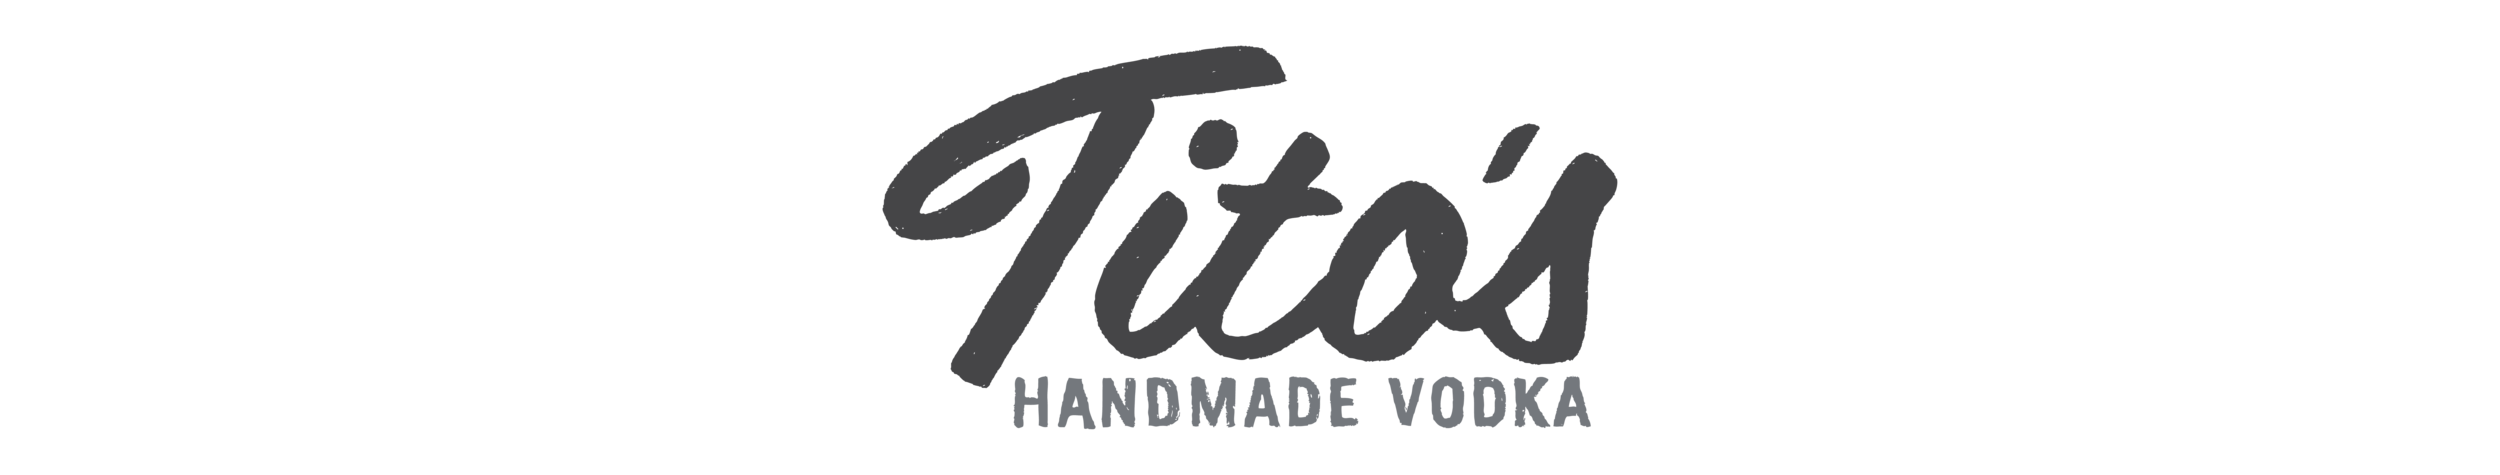 Tito's Logo - Tito's vodka logo png, Picture #750604 tito's vodka logo png